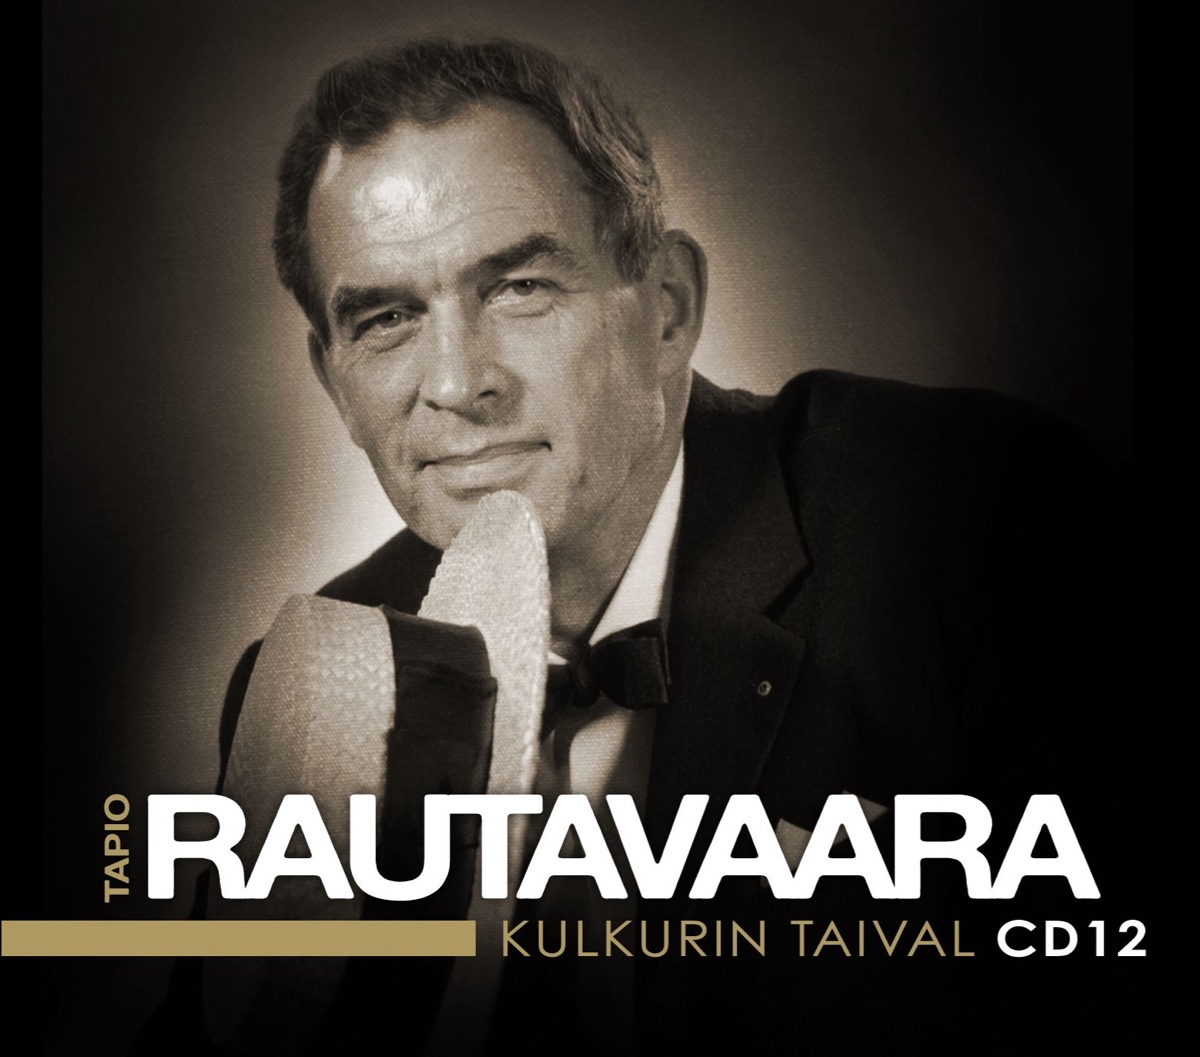 Täällä pohjantähden alla - EP par Tapio Rautavaara sur Apple Music